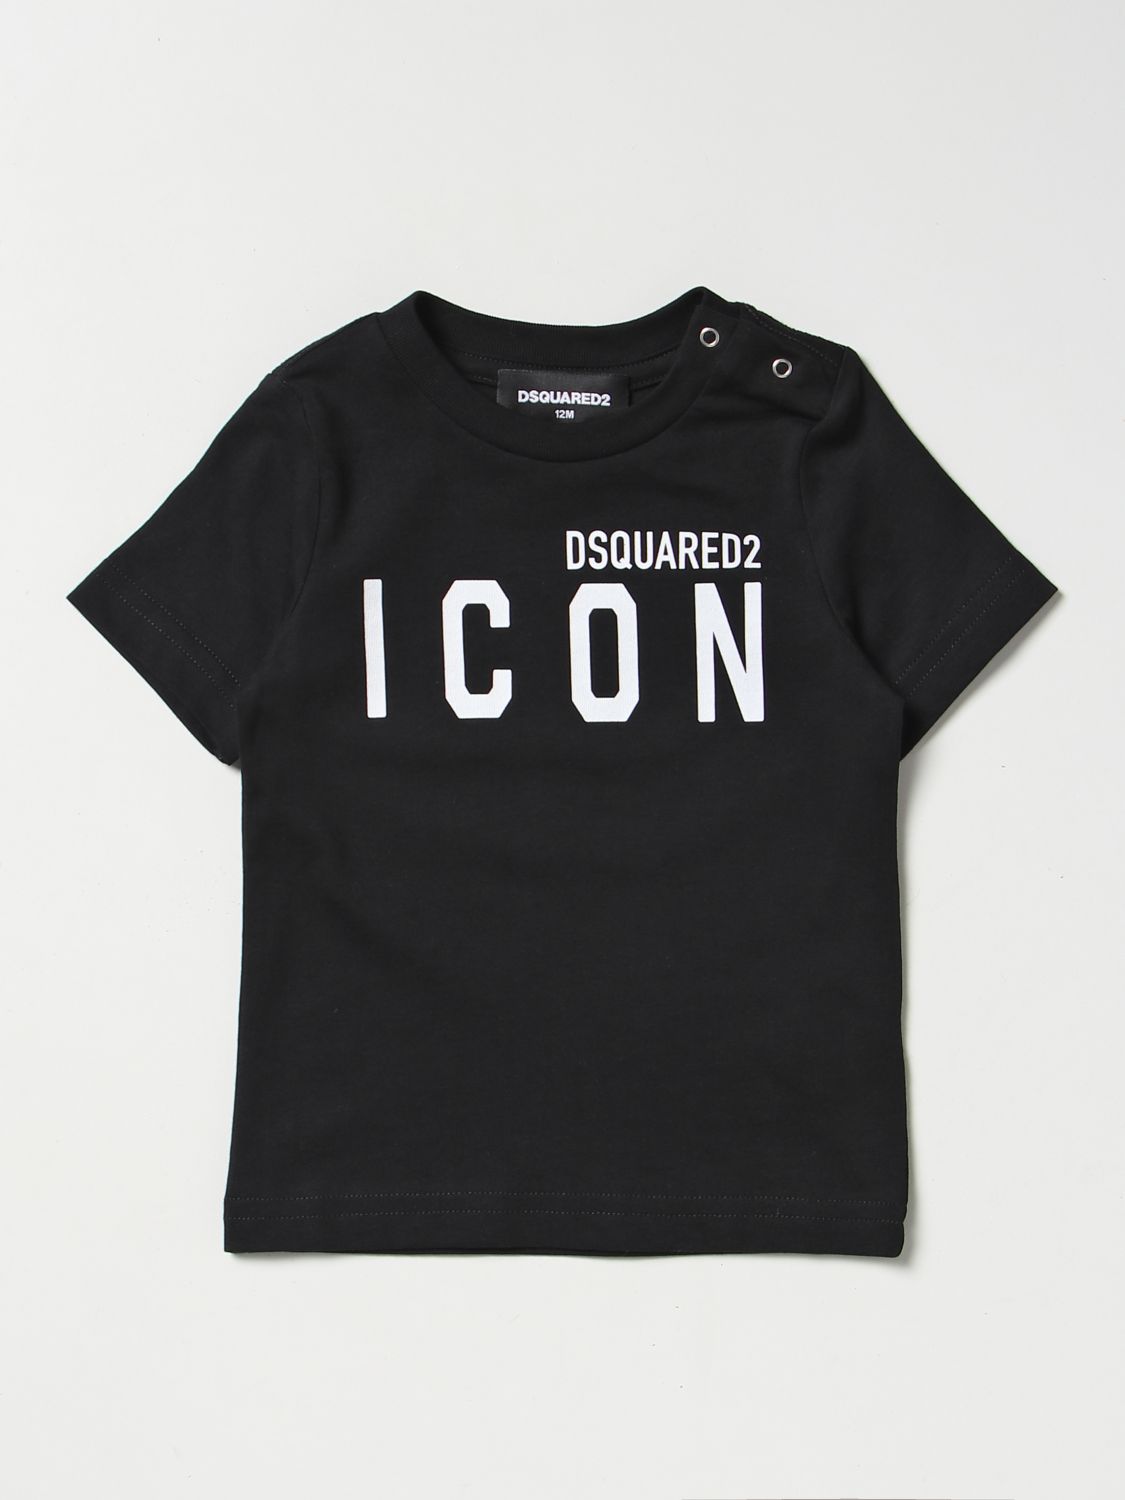 Dsquared2 Junior Babies' T-shirt  Kids Color Black